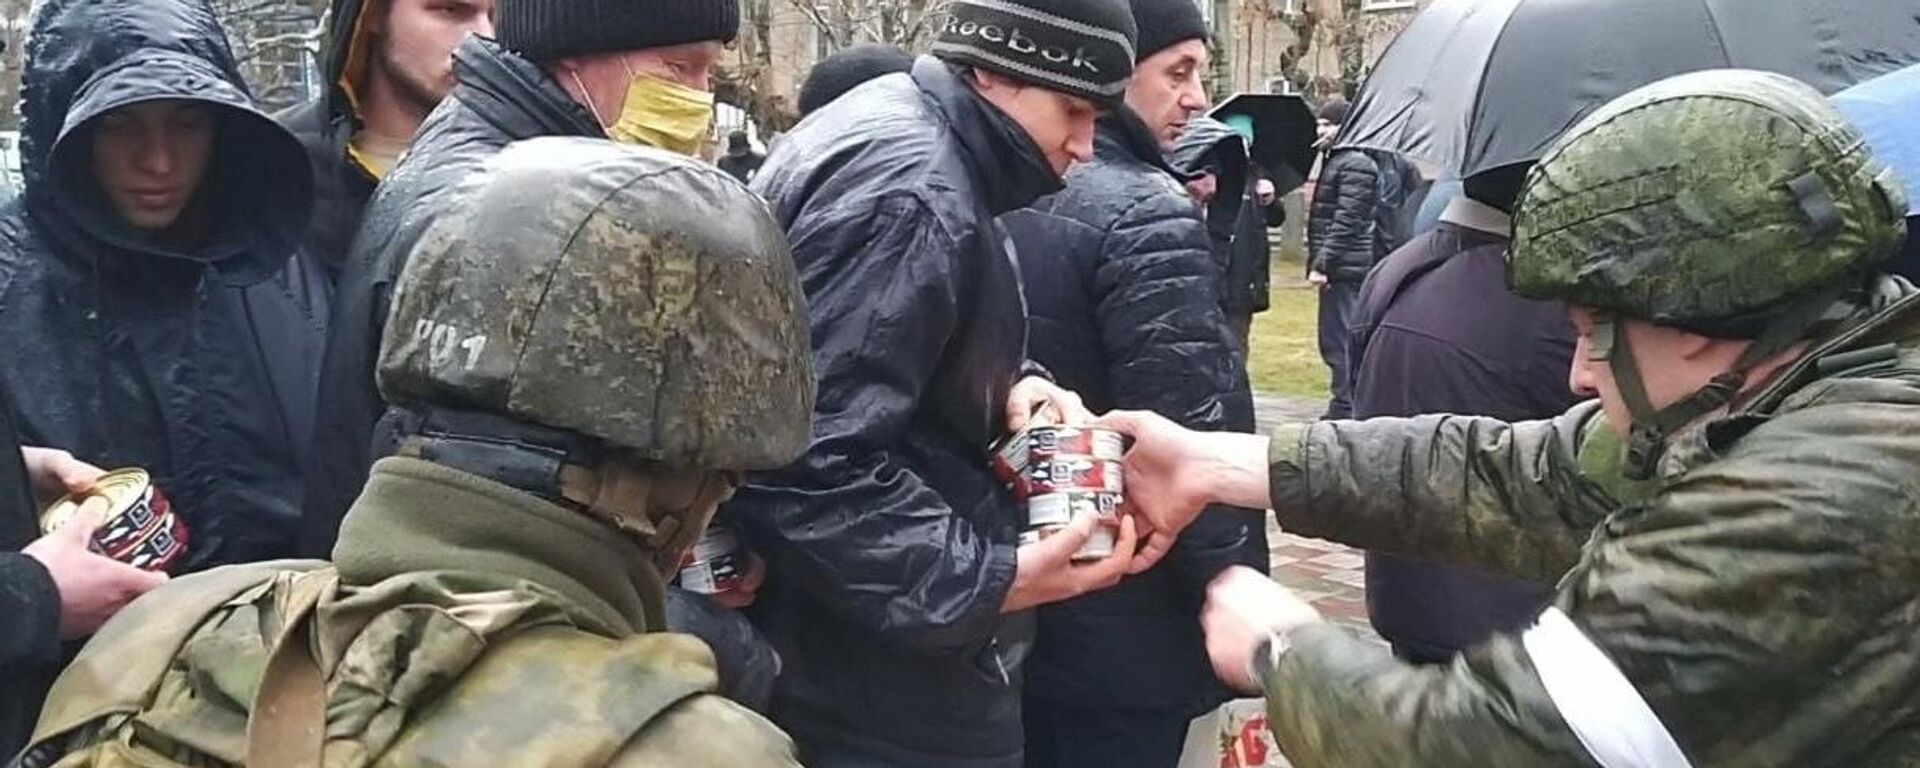 La ayuda humanitaria de las fuerzas rusas a los ciudadanos civiles durante la operación especial de desmilitarización y desnazificación en Ucrania - Sputnik Mundo, 1920, 21.03.2022